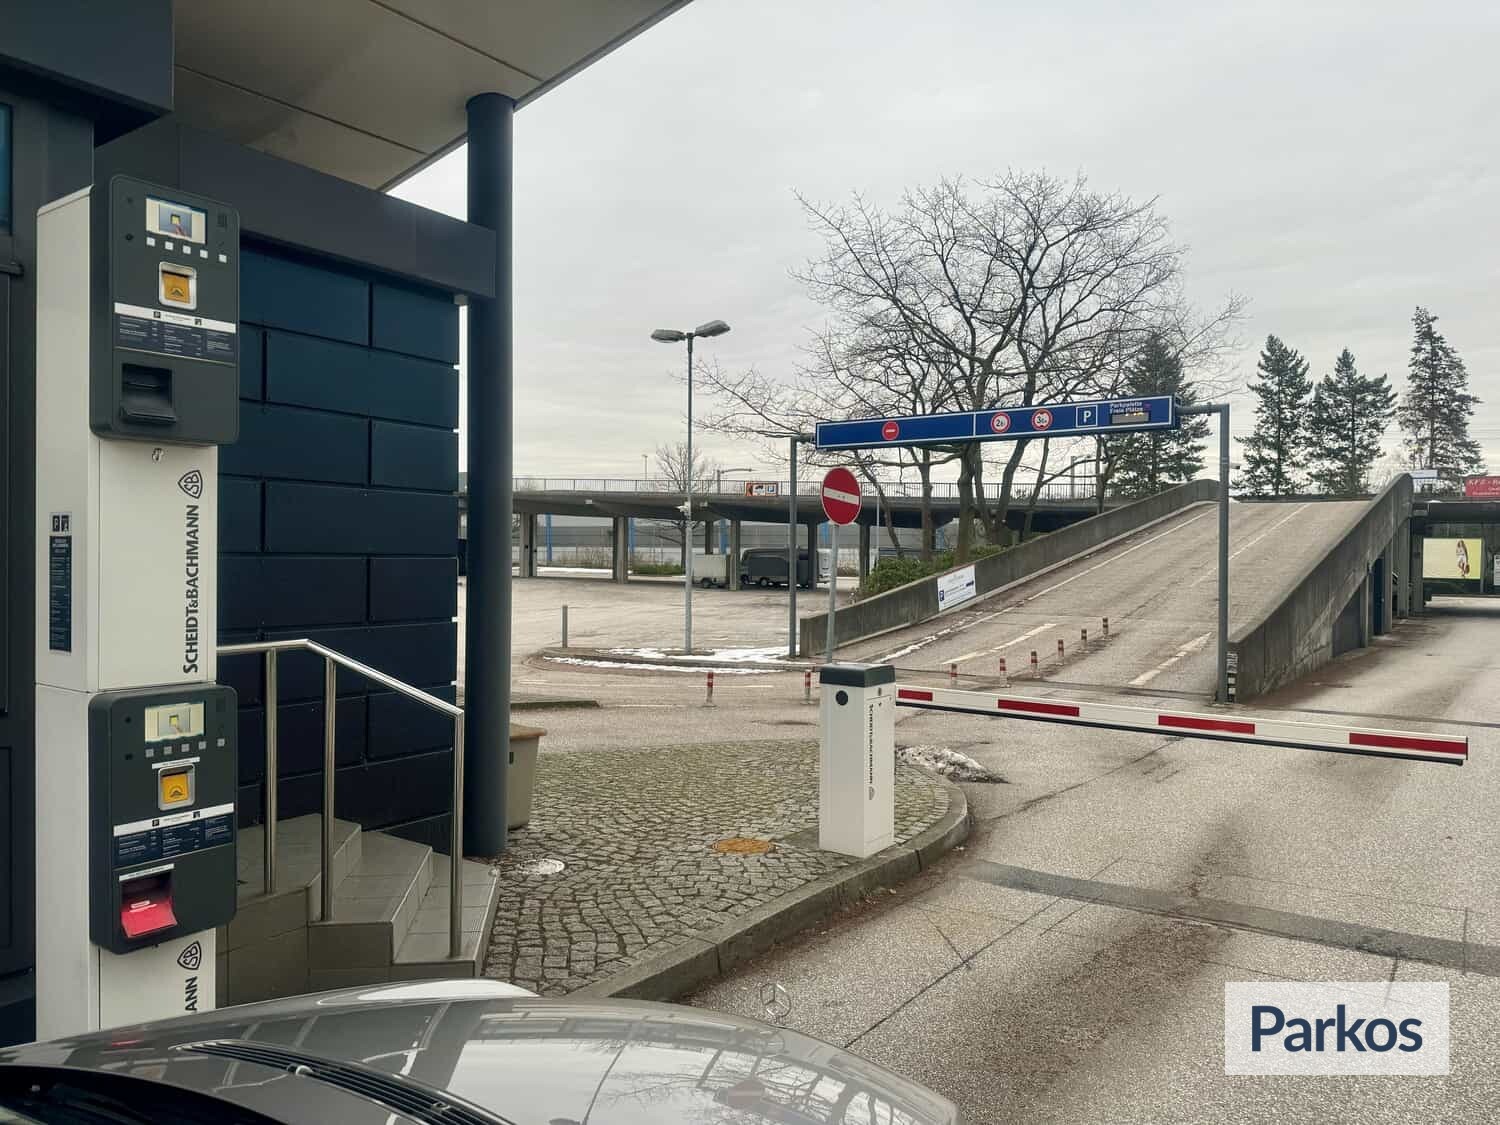 Hansa Parking - Parken Flughafen Hamburg - picture 1